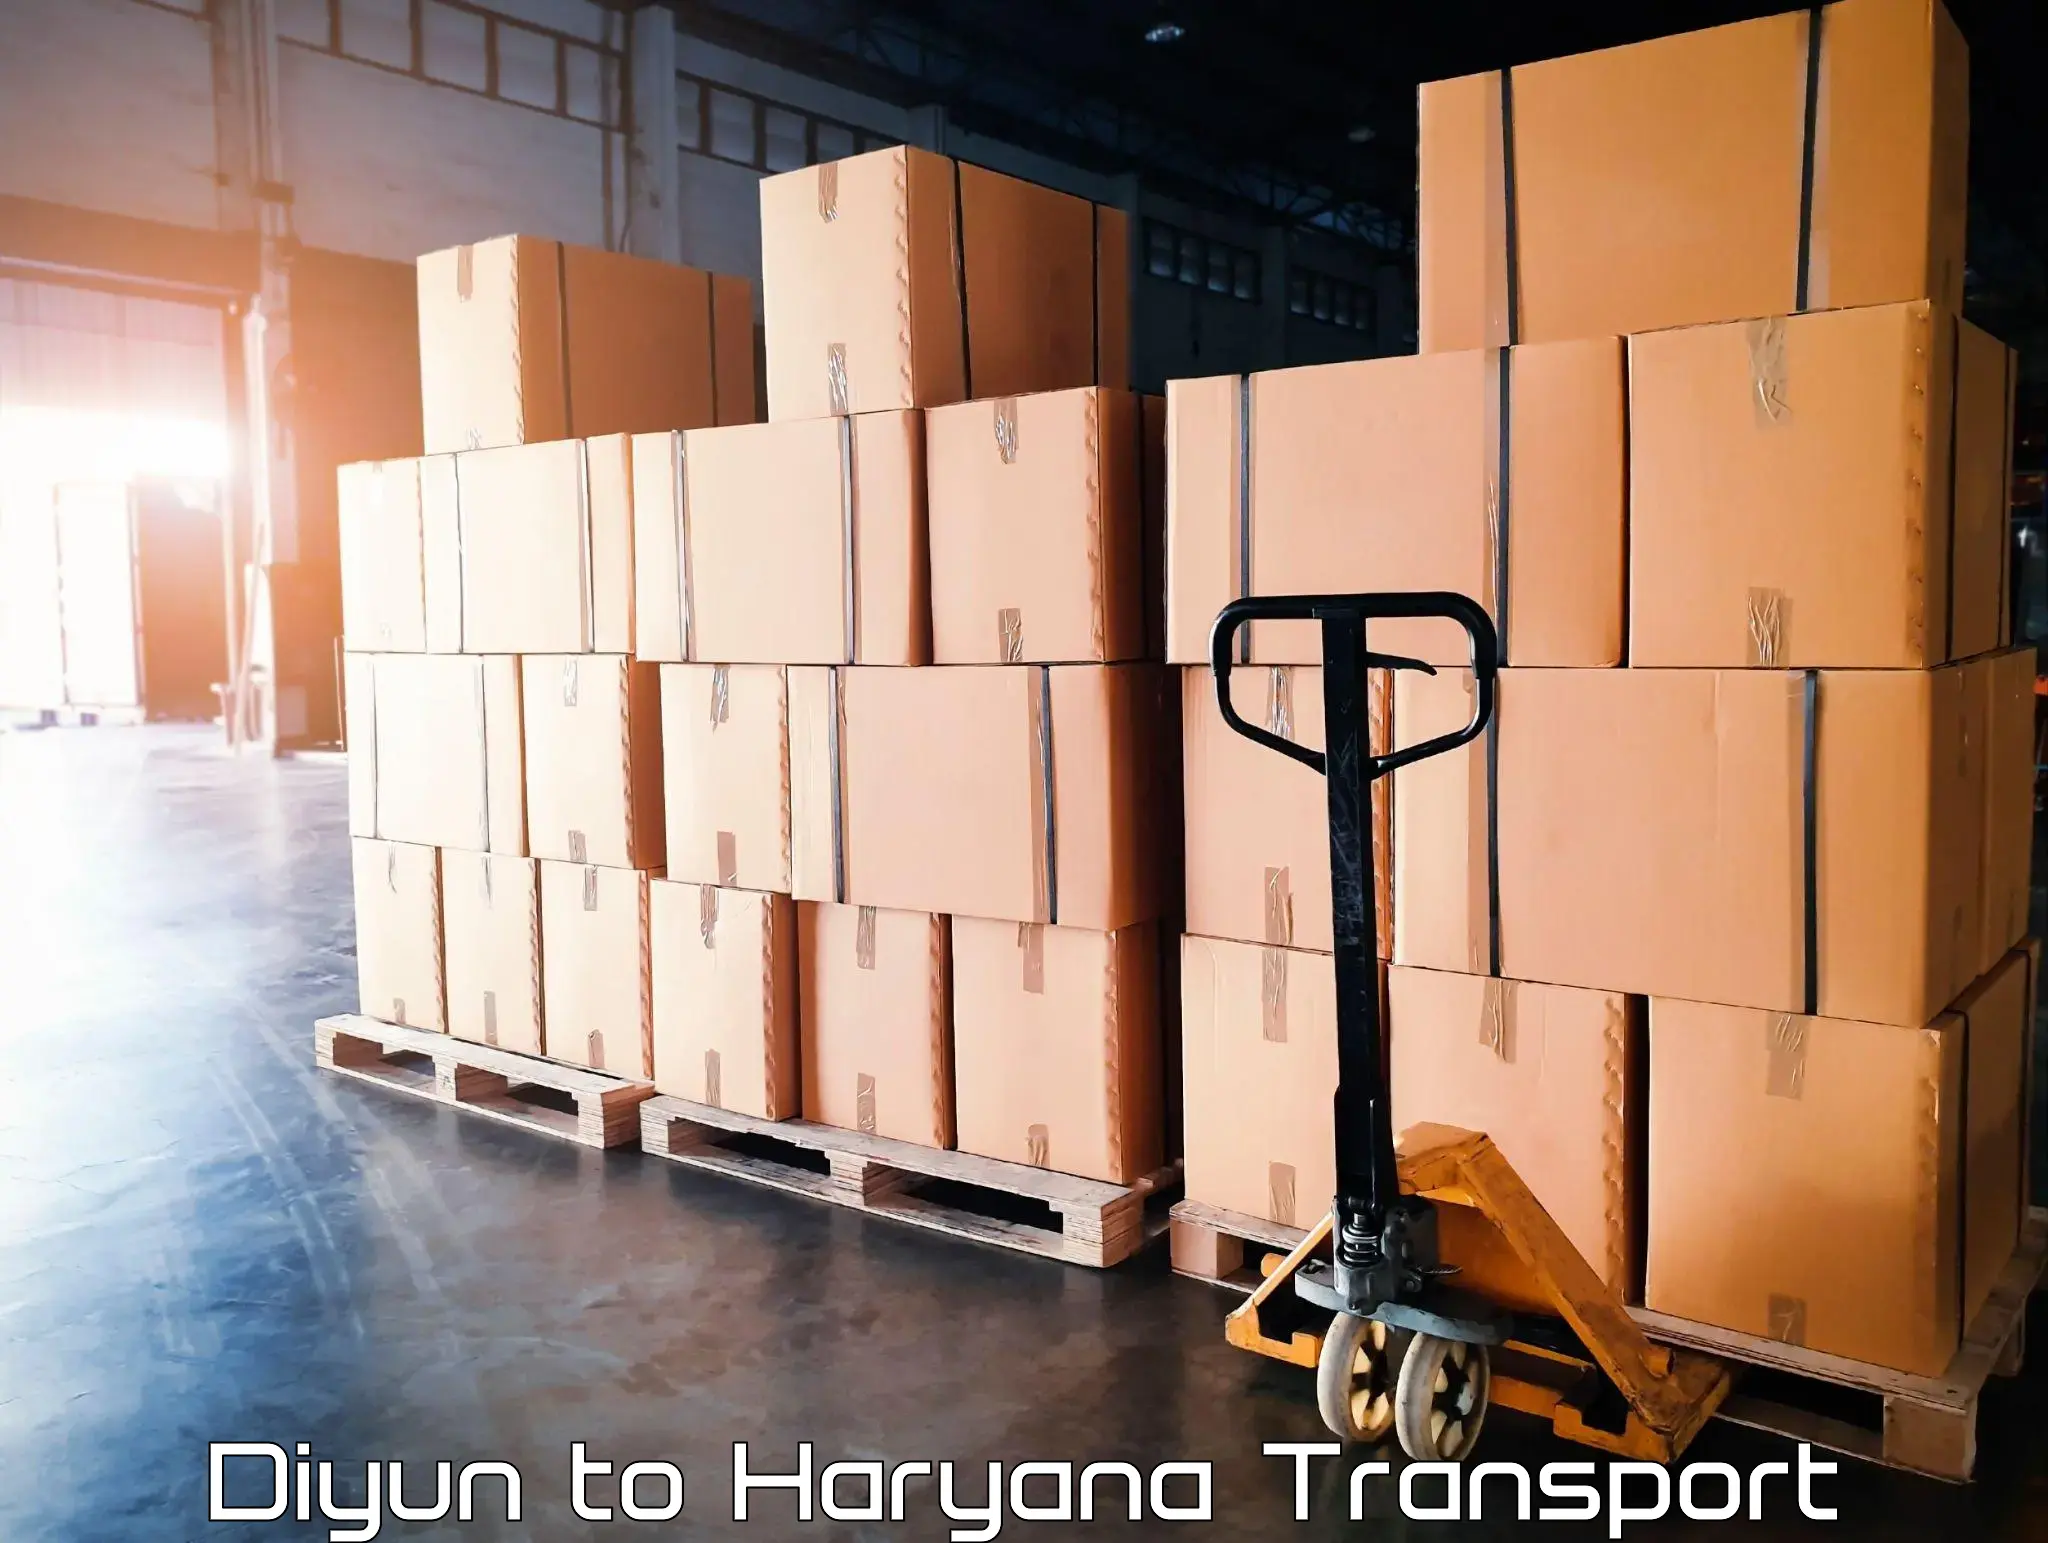 Vehicle transport services Diyun to Odhan